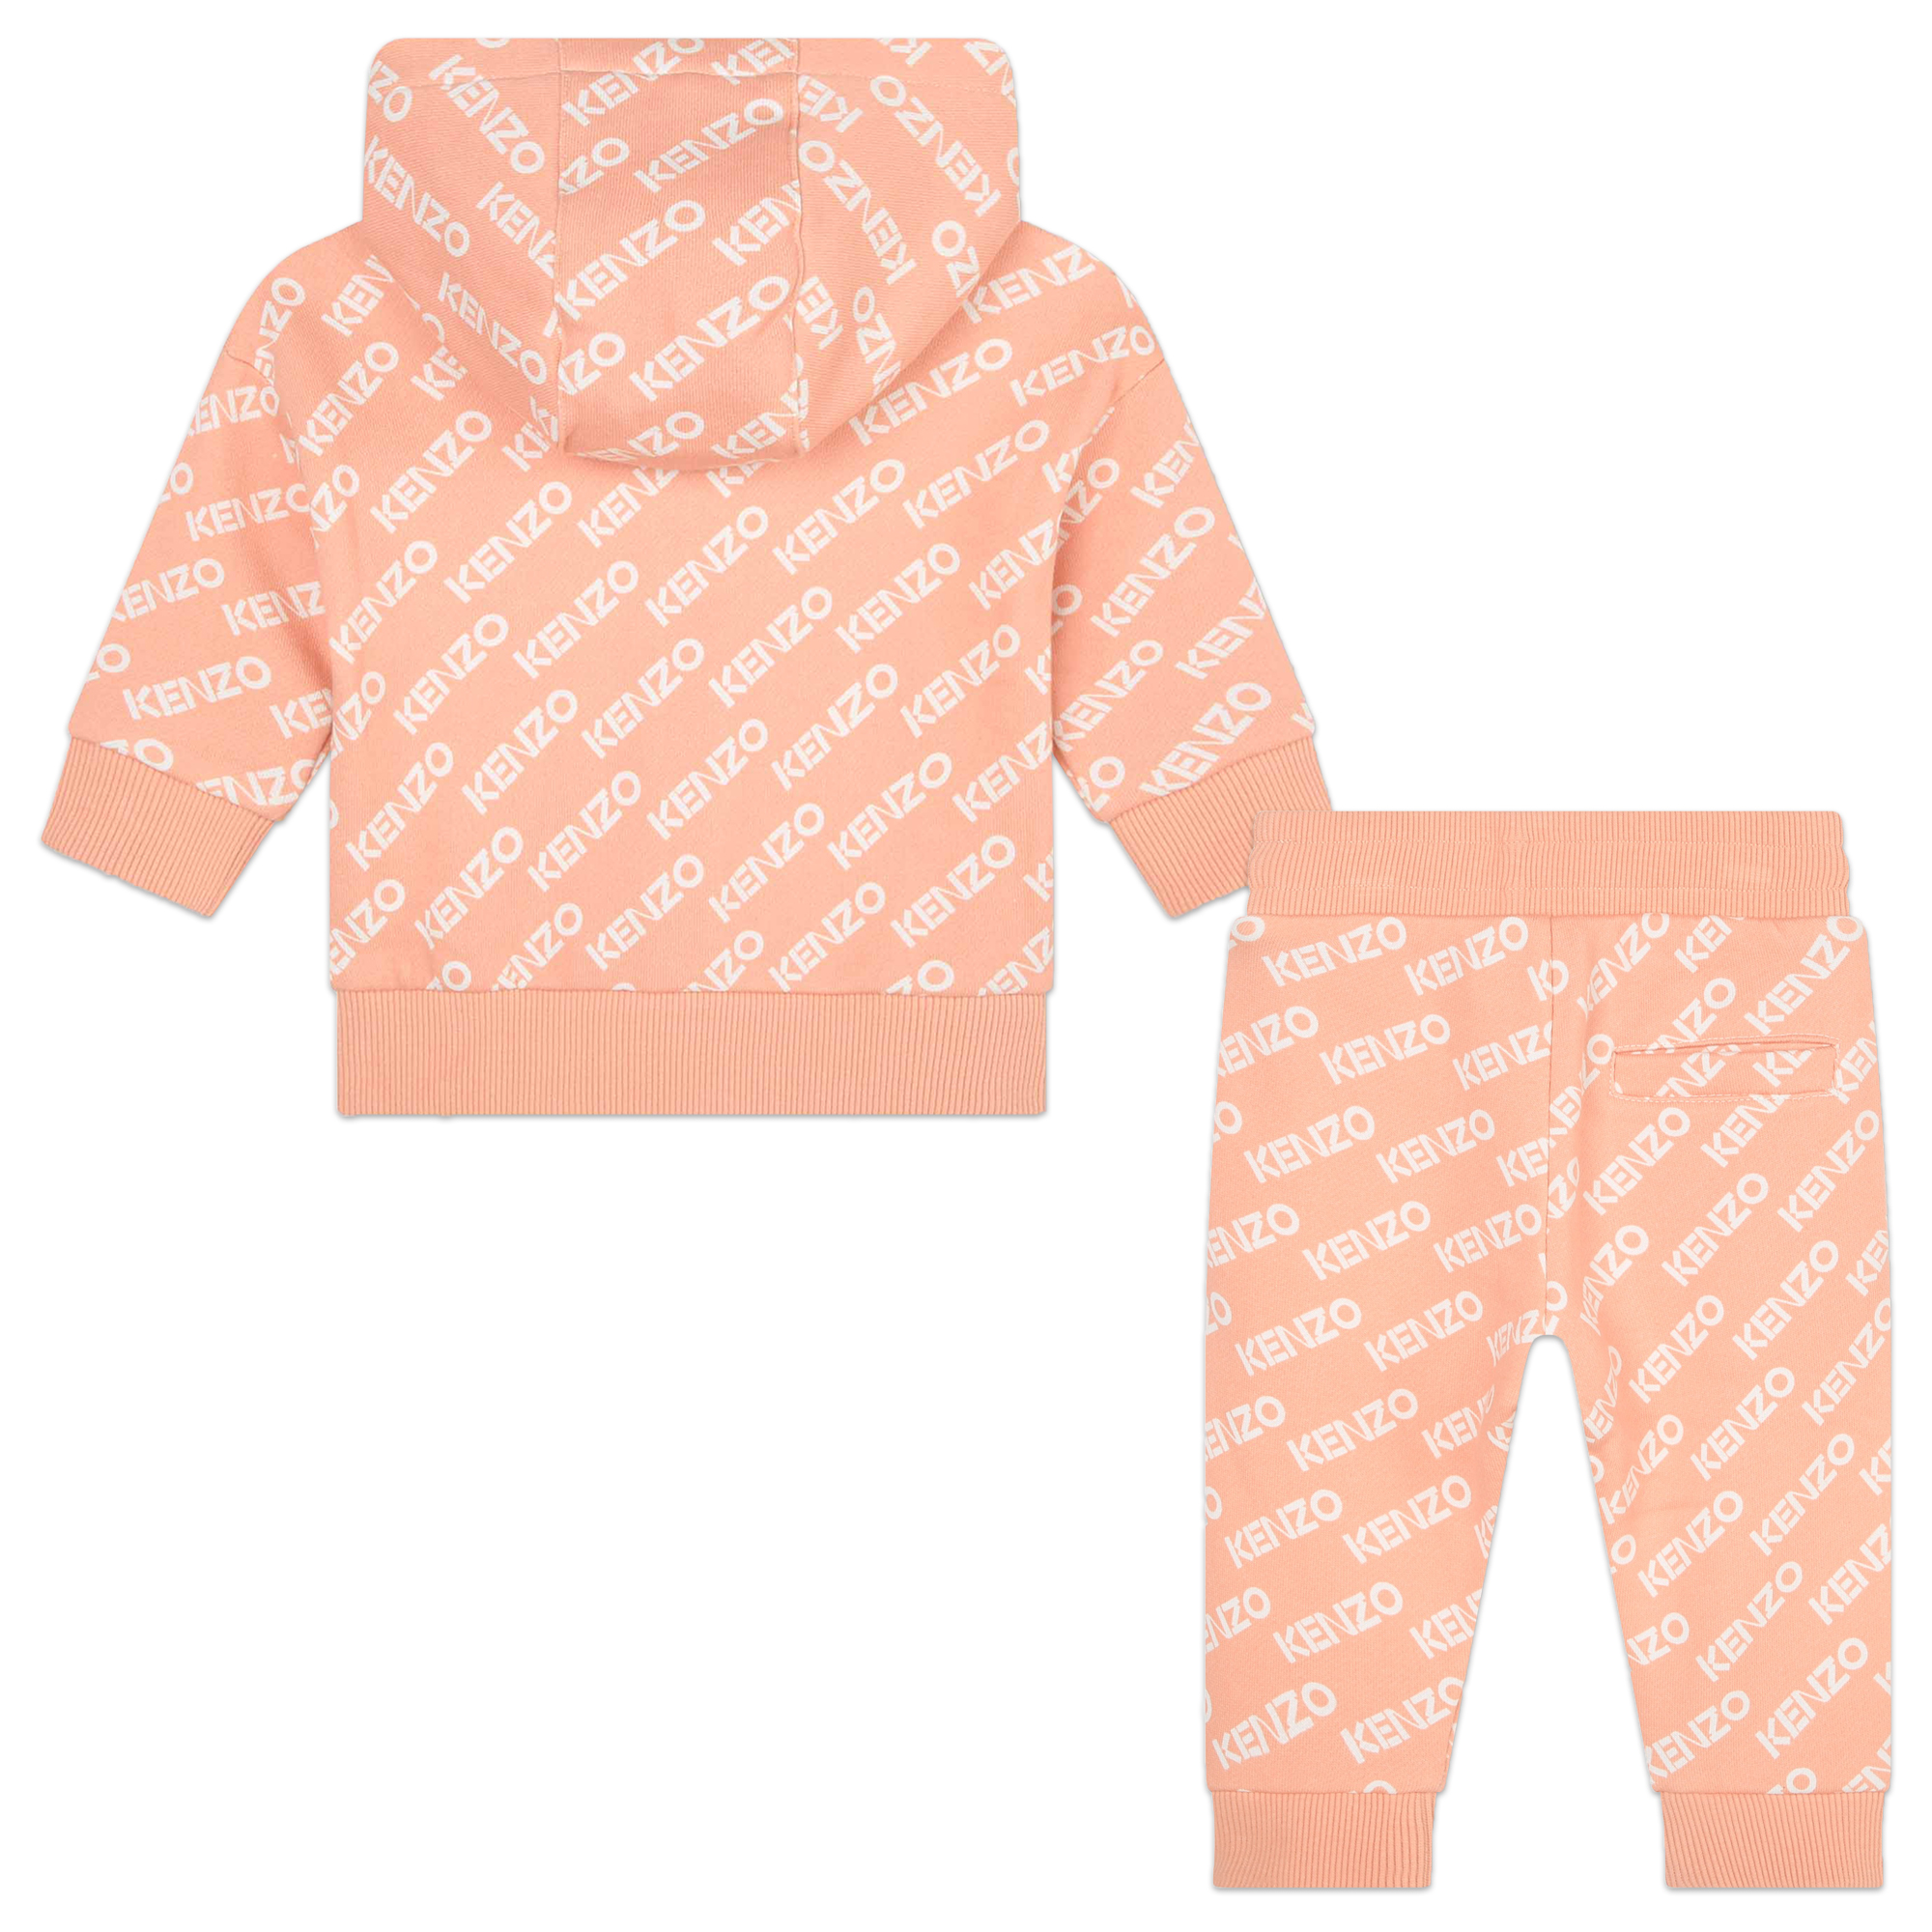 Sudadera de muletón y pantalón de chándal en naranja de bebé niño